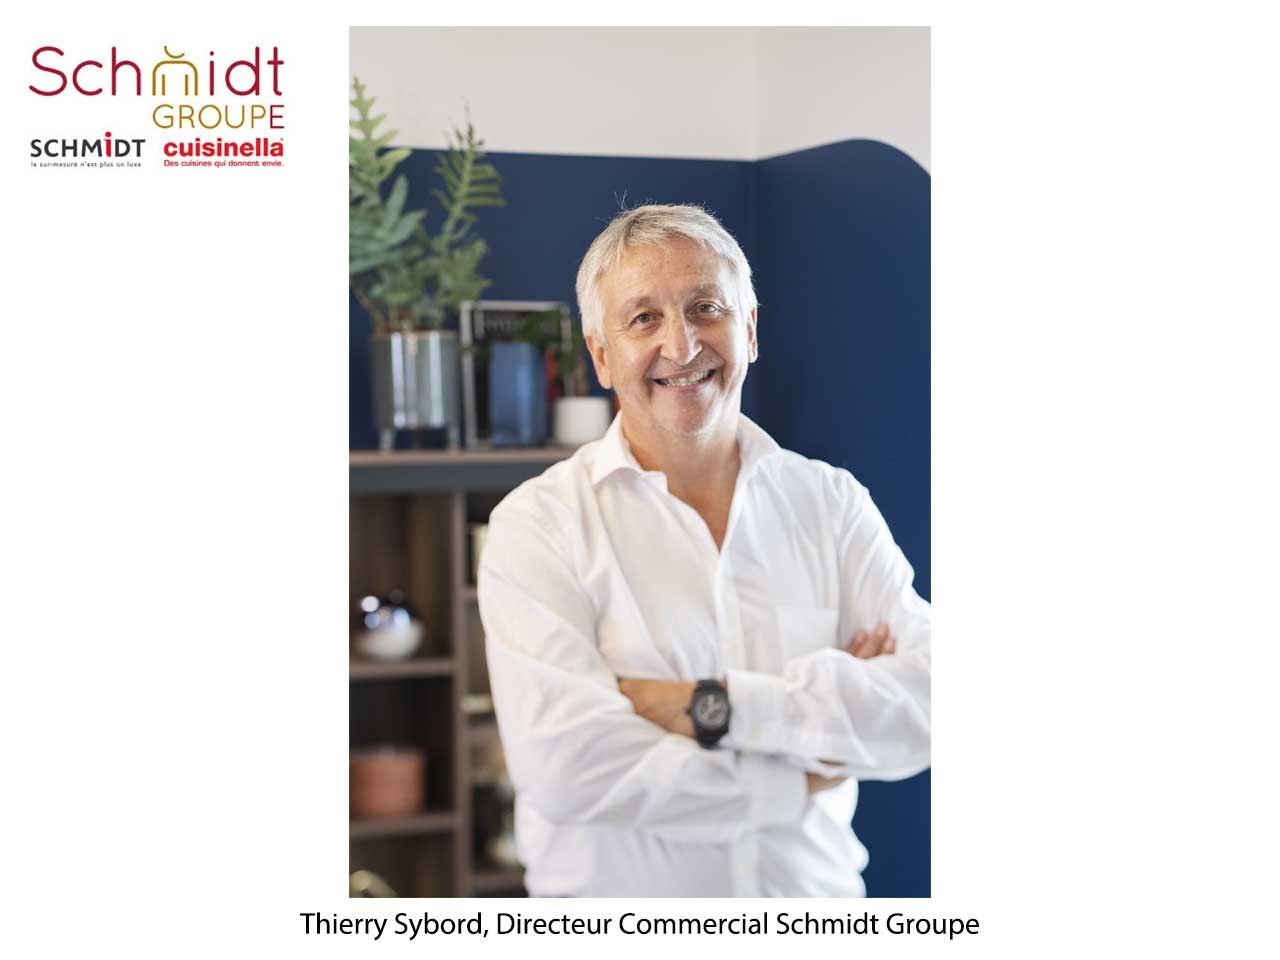 Interview de Thierry Sybord, Directeur Commercial Schmidt Groupe : Chez Schmidt Groupe, la révolution du commerce est en marche